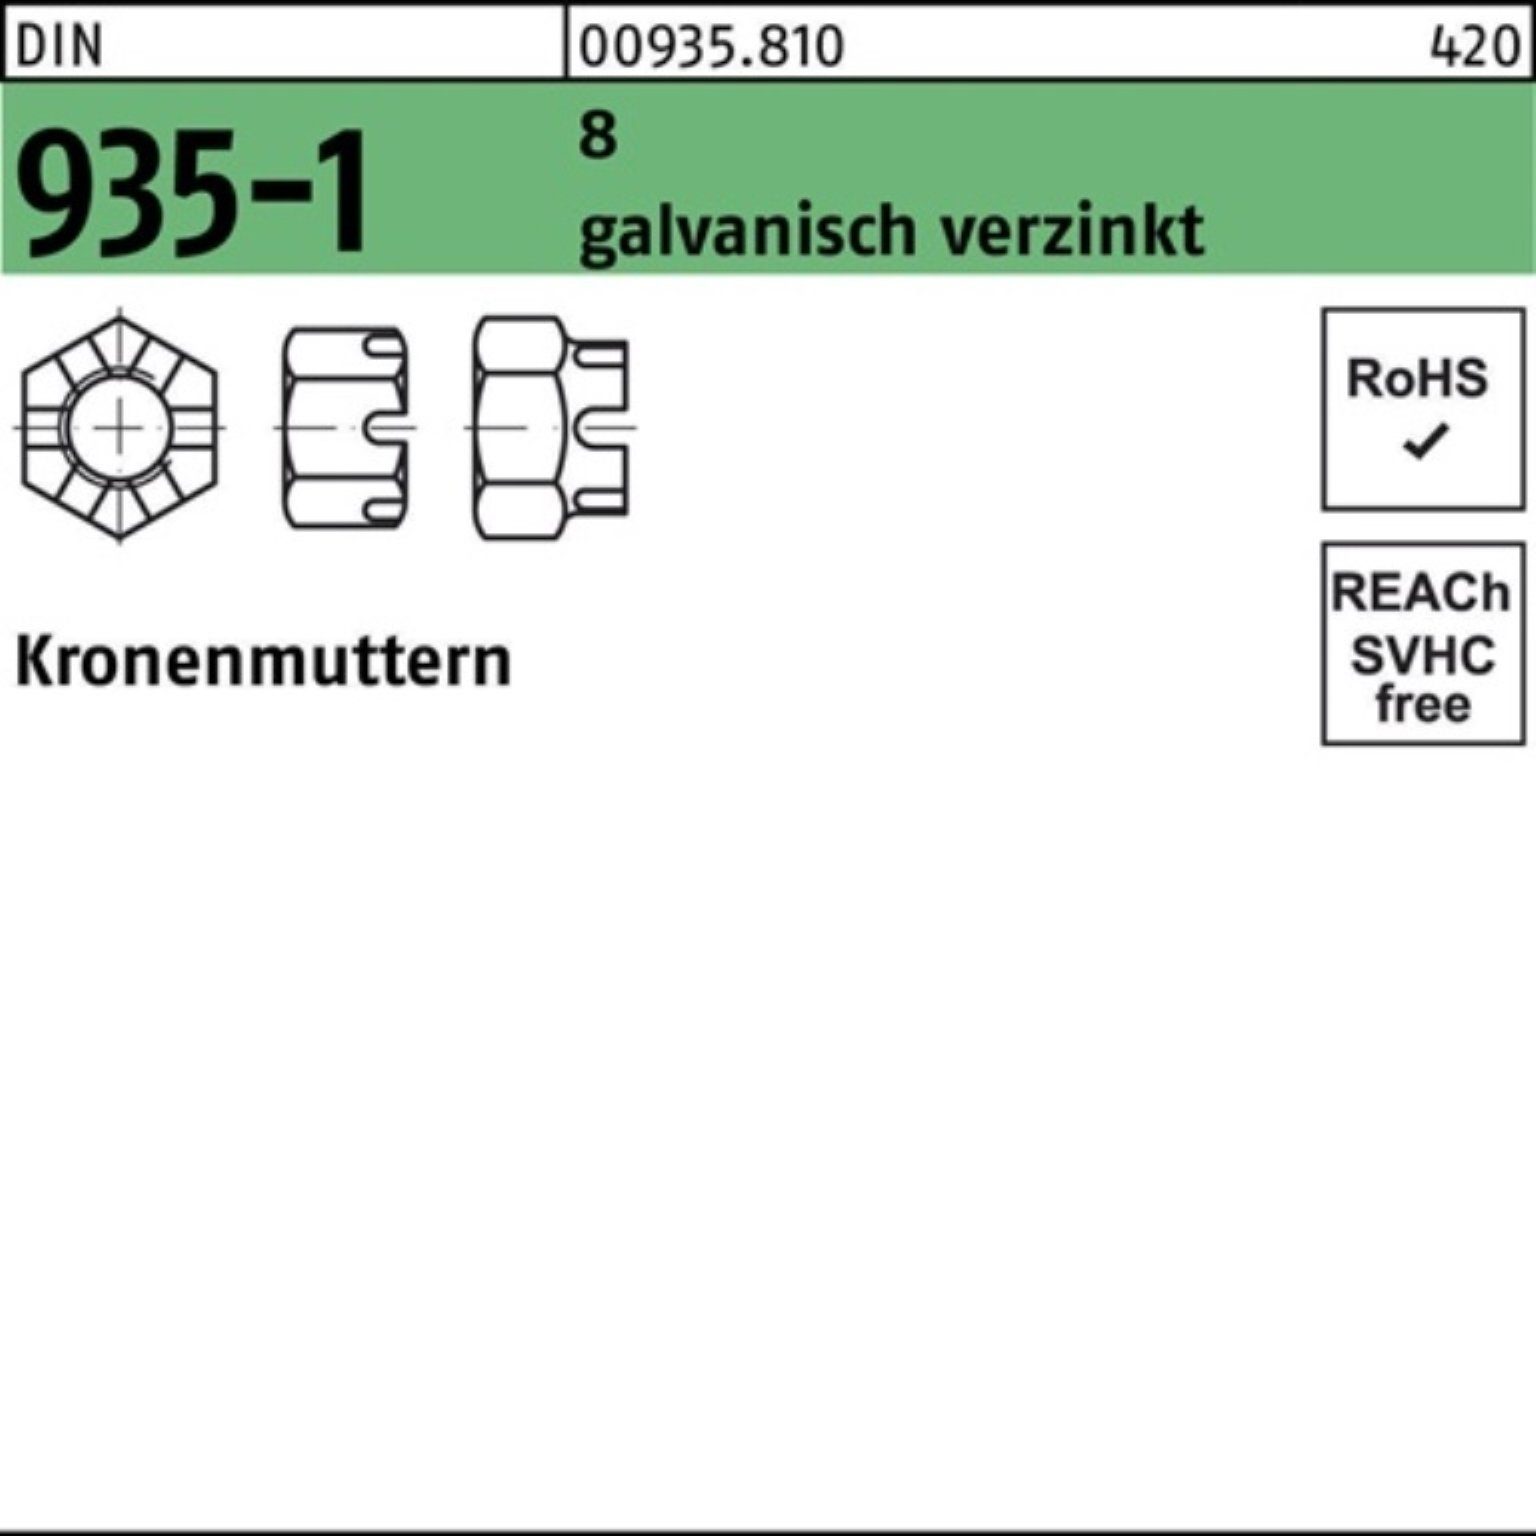 Reyher Kronenmutter 100er Pack Kronenmutter DIN 935-1 M12 SW 19 8 galv.verz. 100 Stück DI